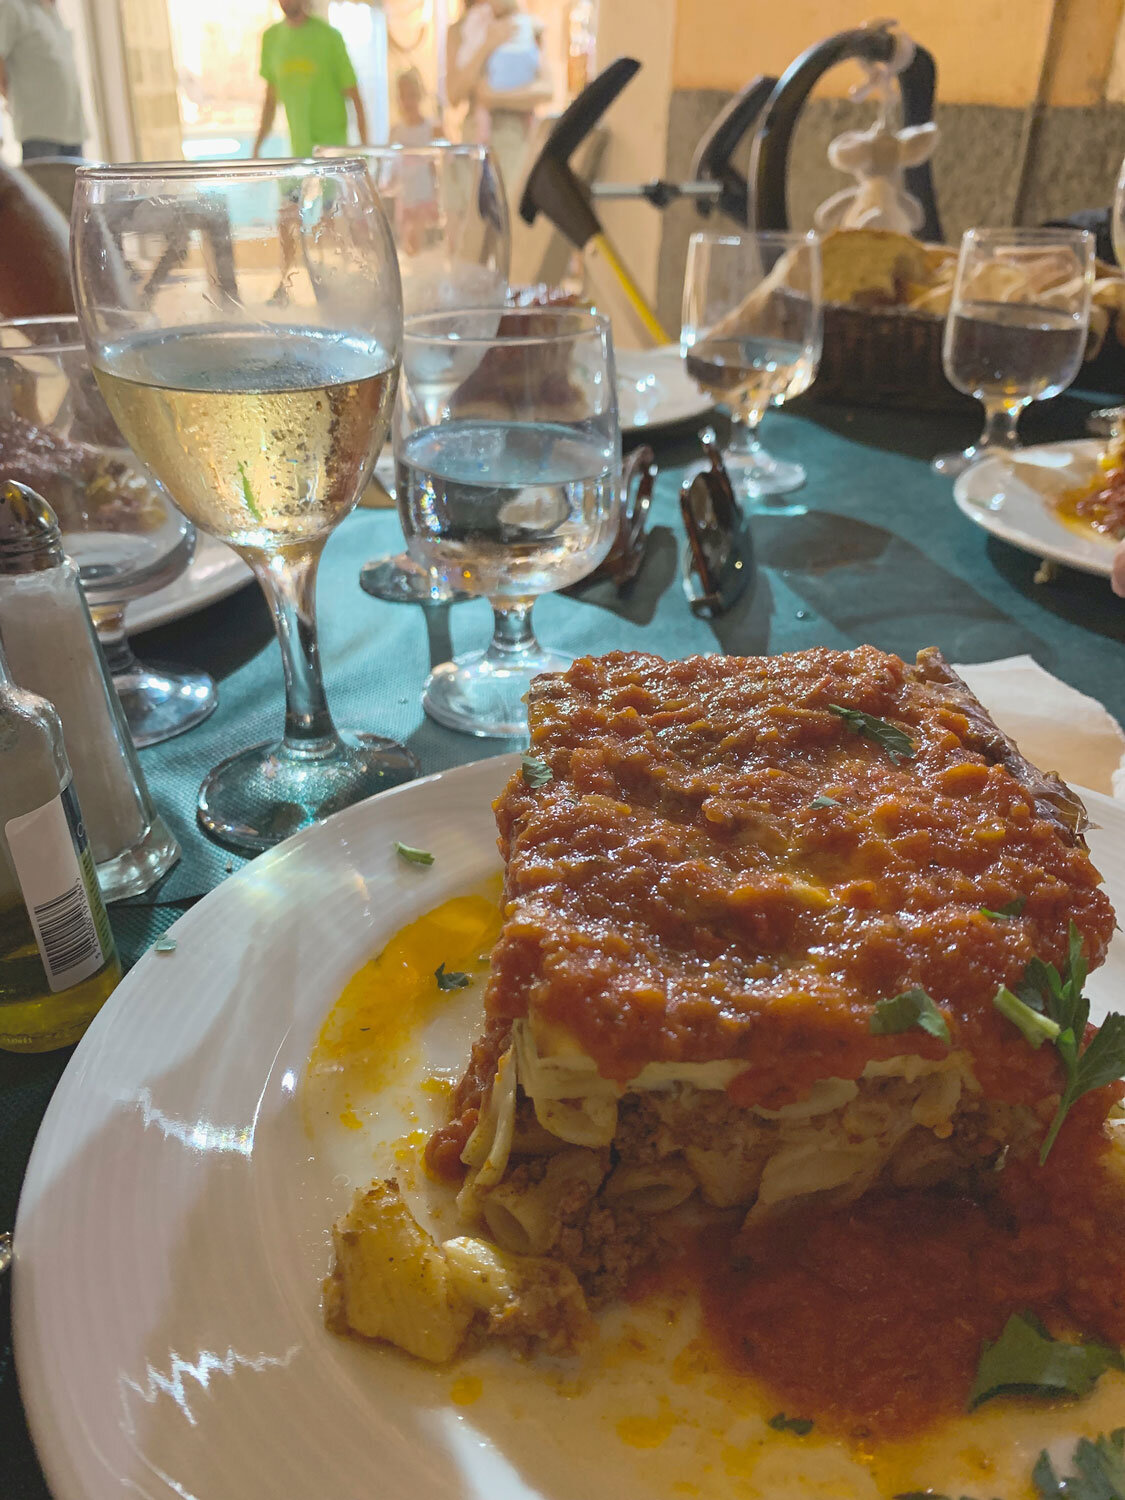 Das Gericht Pastitiso ist typisch in der griechischen Küche und ähnelt der italienischen Lasagne.